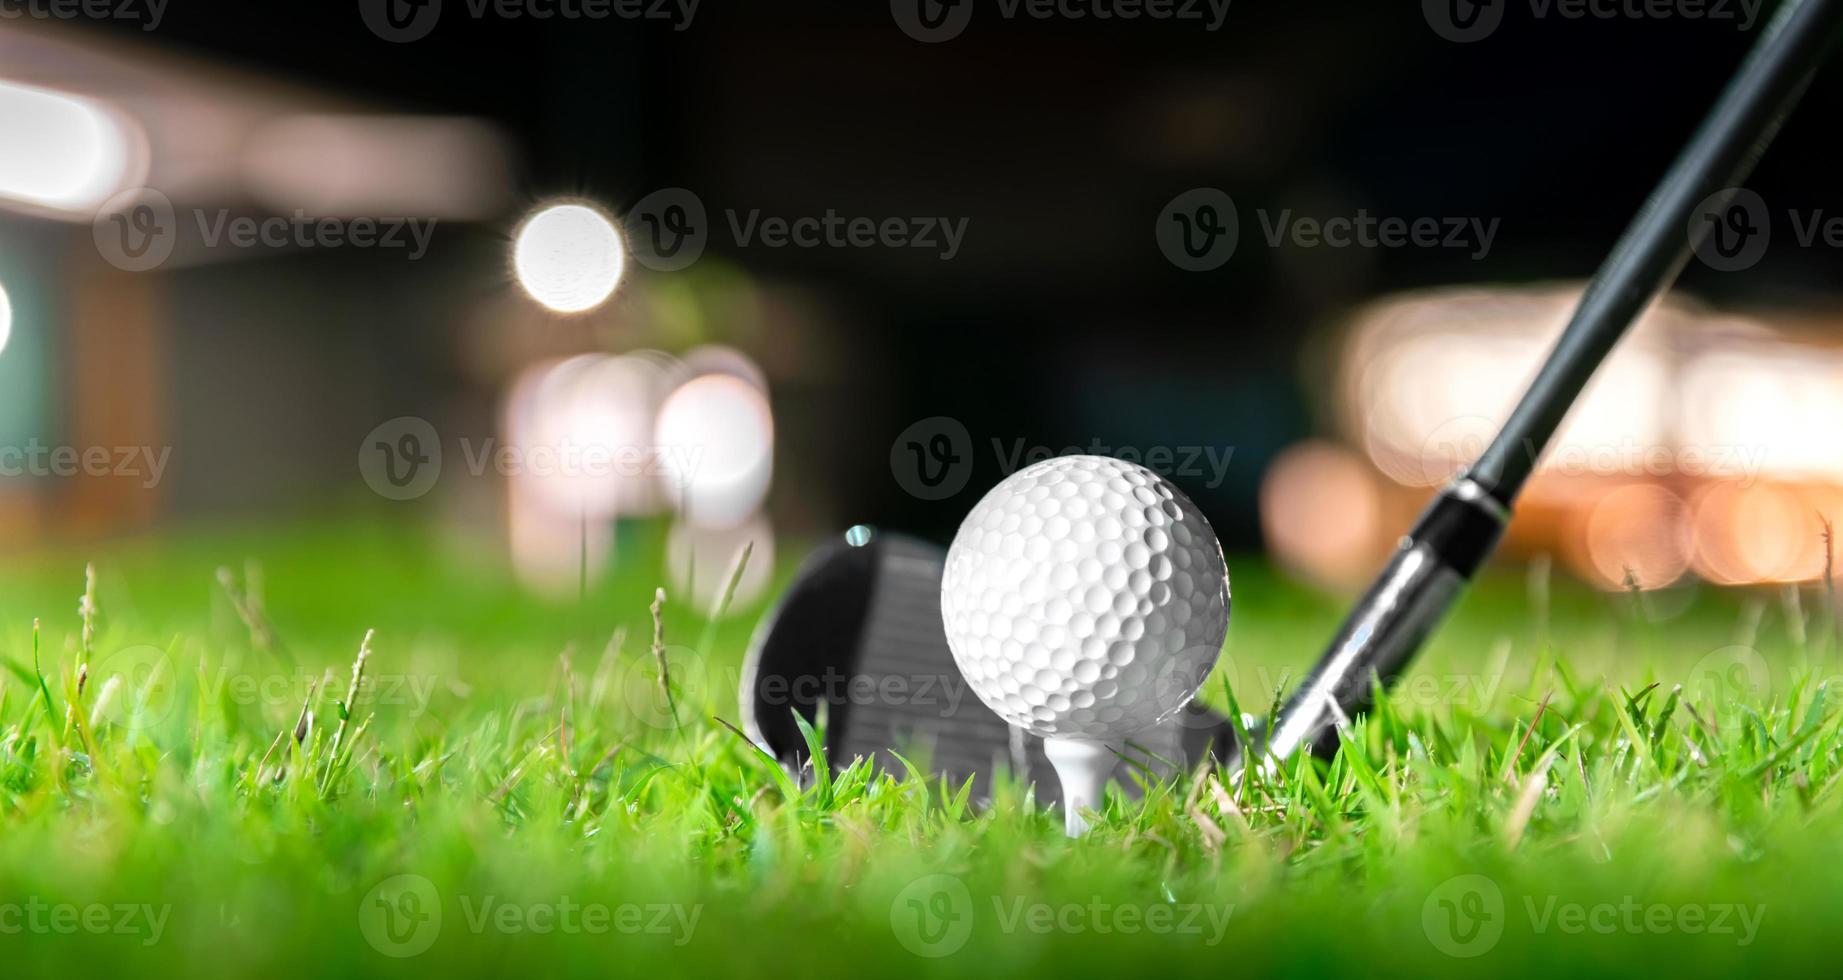 golfbal op tee in prachtig gras op golfbaan voor schot naar hole in one in competitie met ijzer 7 foto